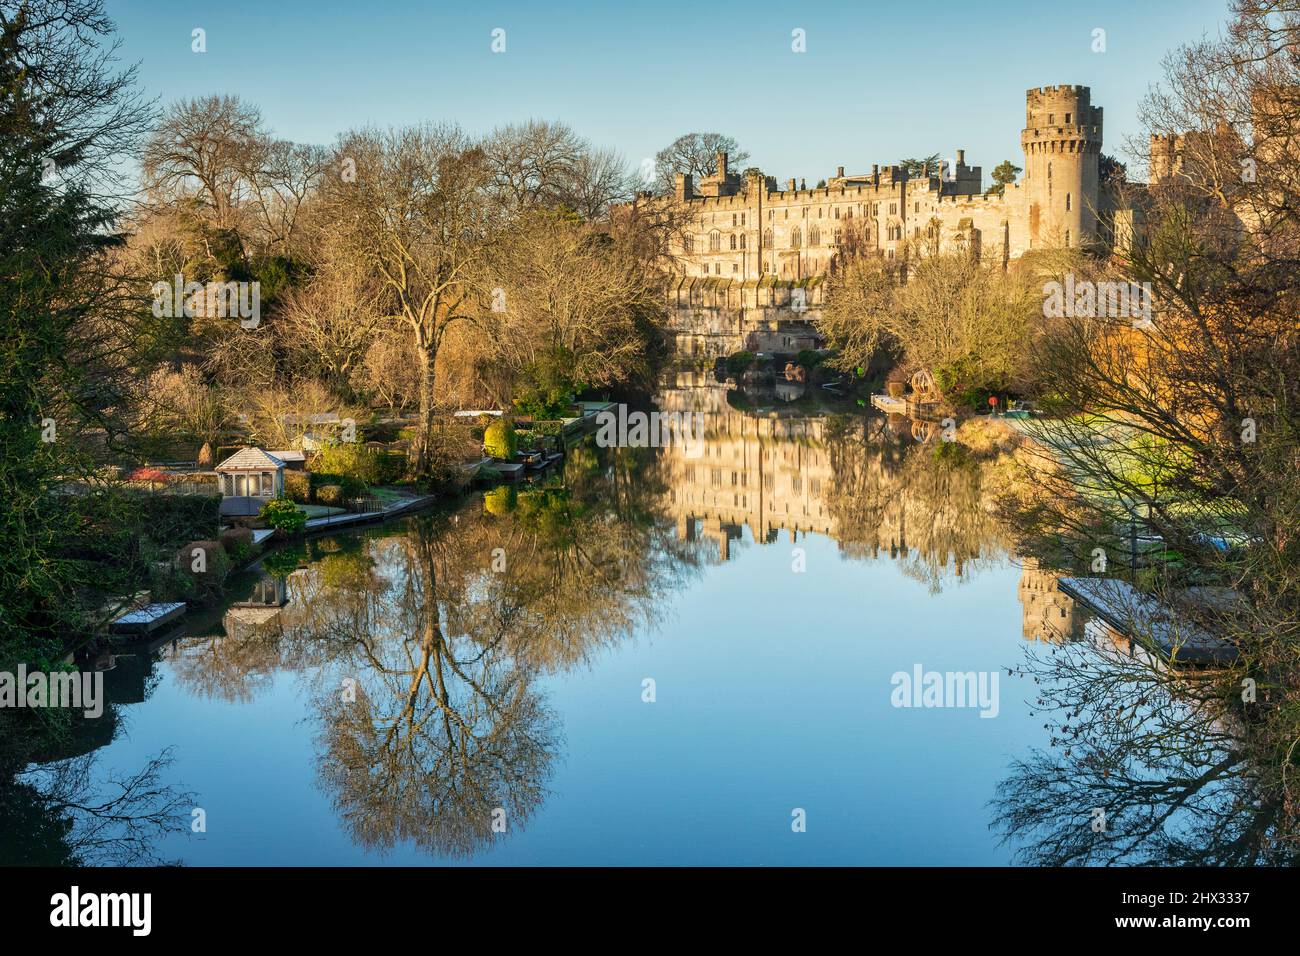 17 de enero de 2022: Castillo de Warwick, Warwickshire, Reino Unido - Castillo de Warwick reflejado en el río Avon en un hermoso día soleado de invierno con cielo azul claro. Foto de stock